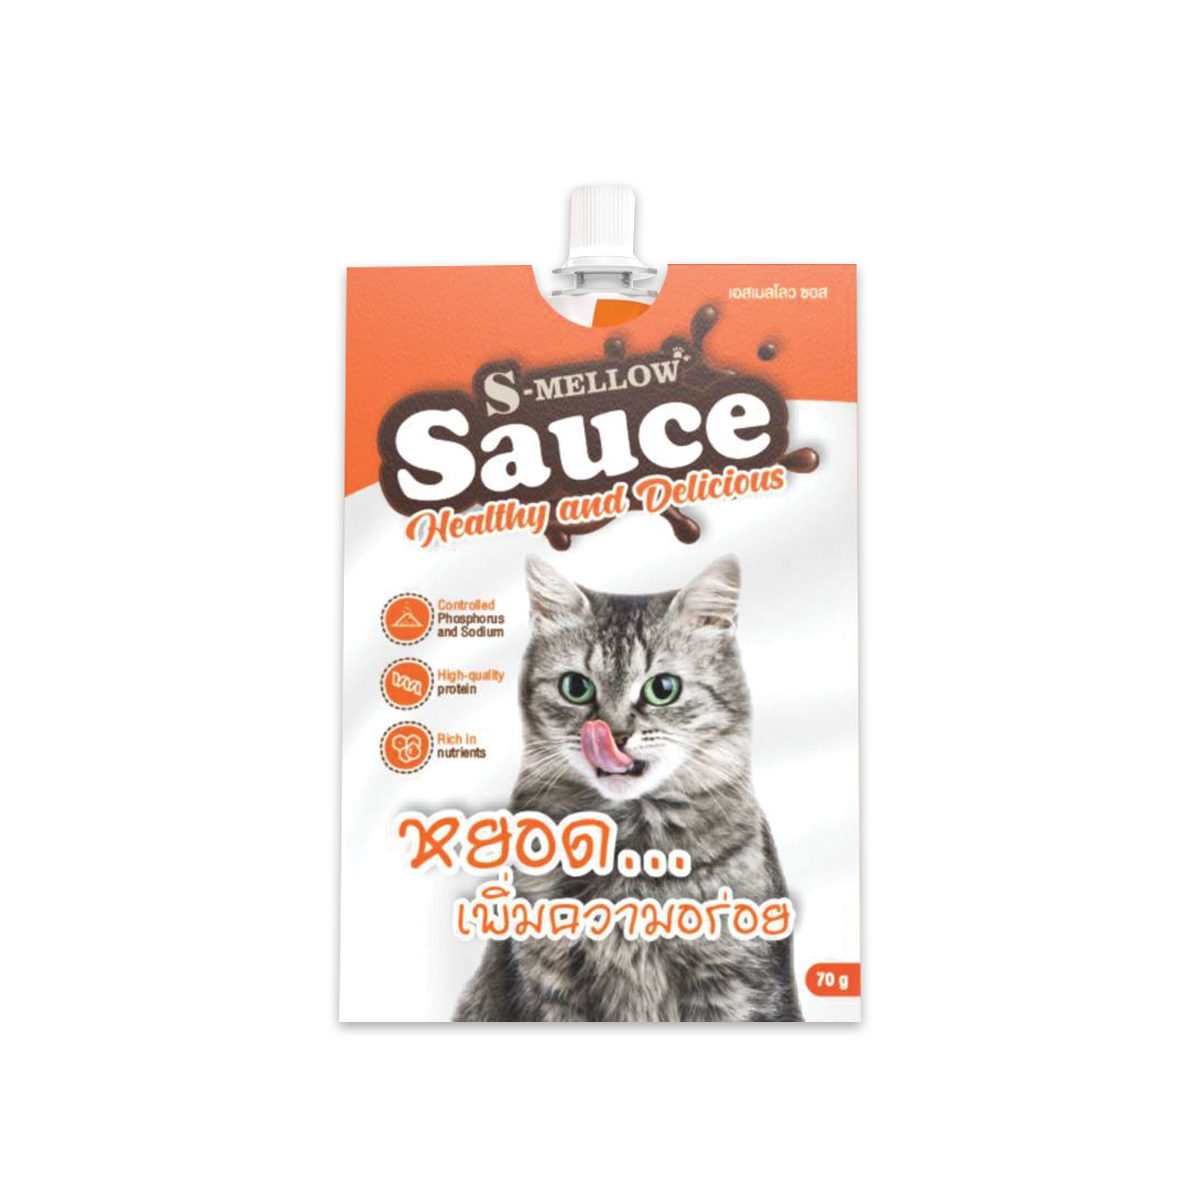 S-mellow Sauce เอสเมลโลว ซอสปลาทูน่าและแกะ สำหรับแมว 70g